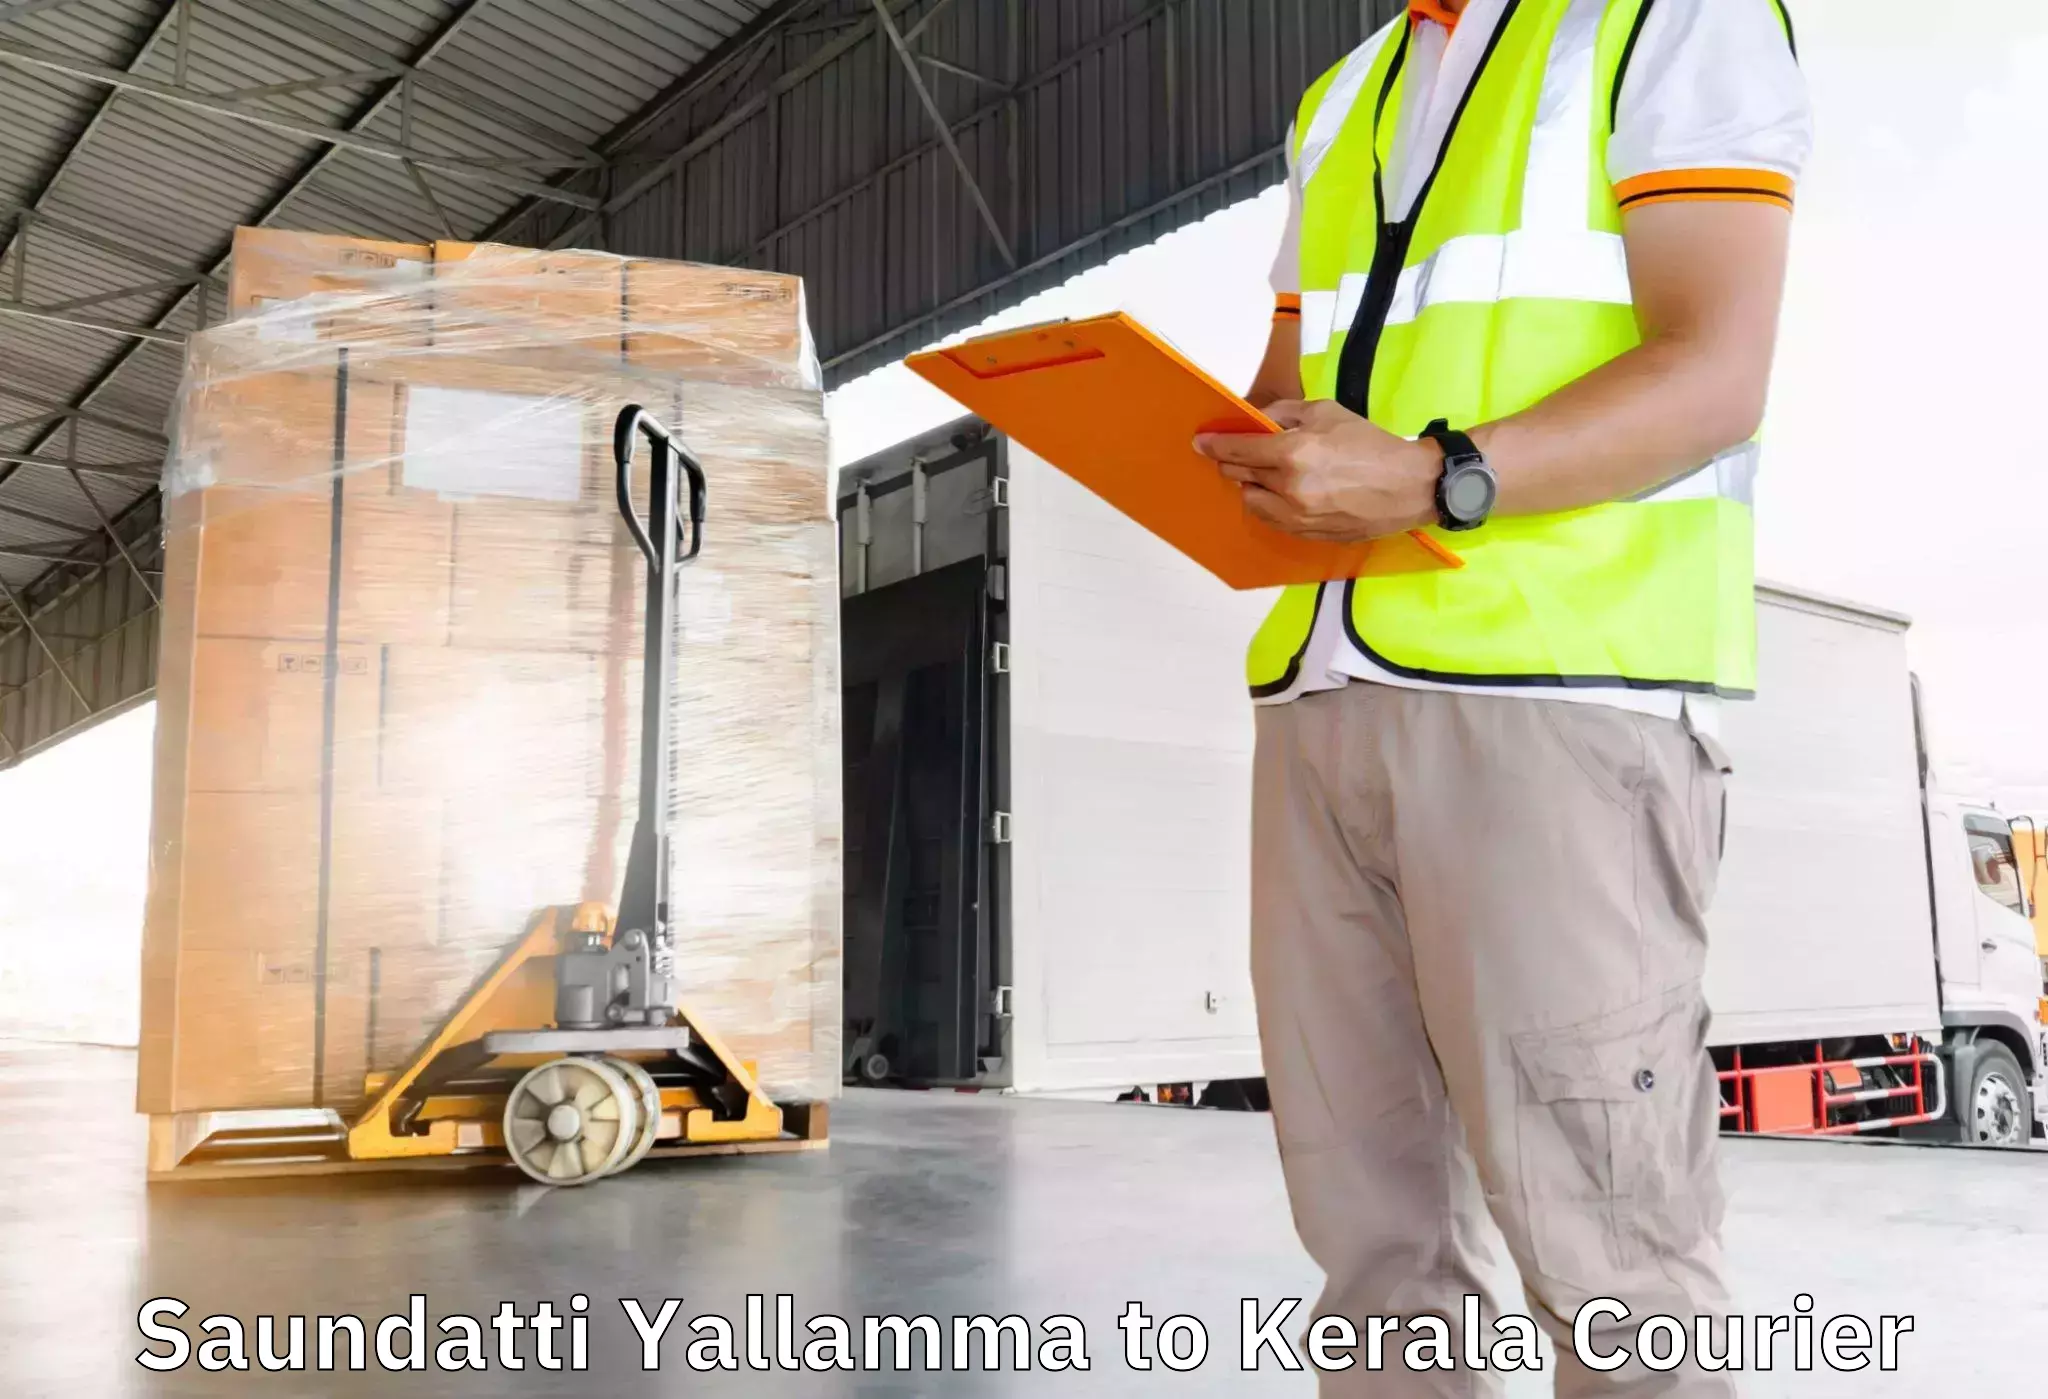 Professional moving company Saundatti Yallamma to Kerala